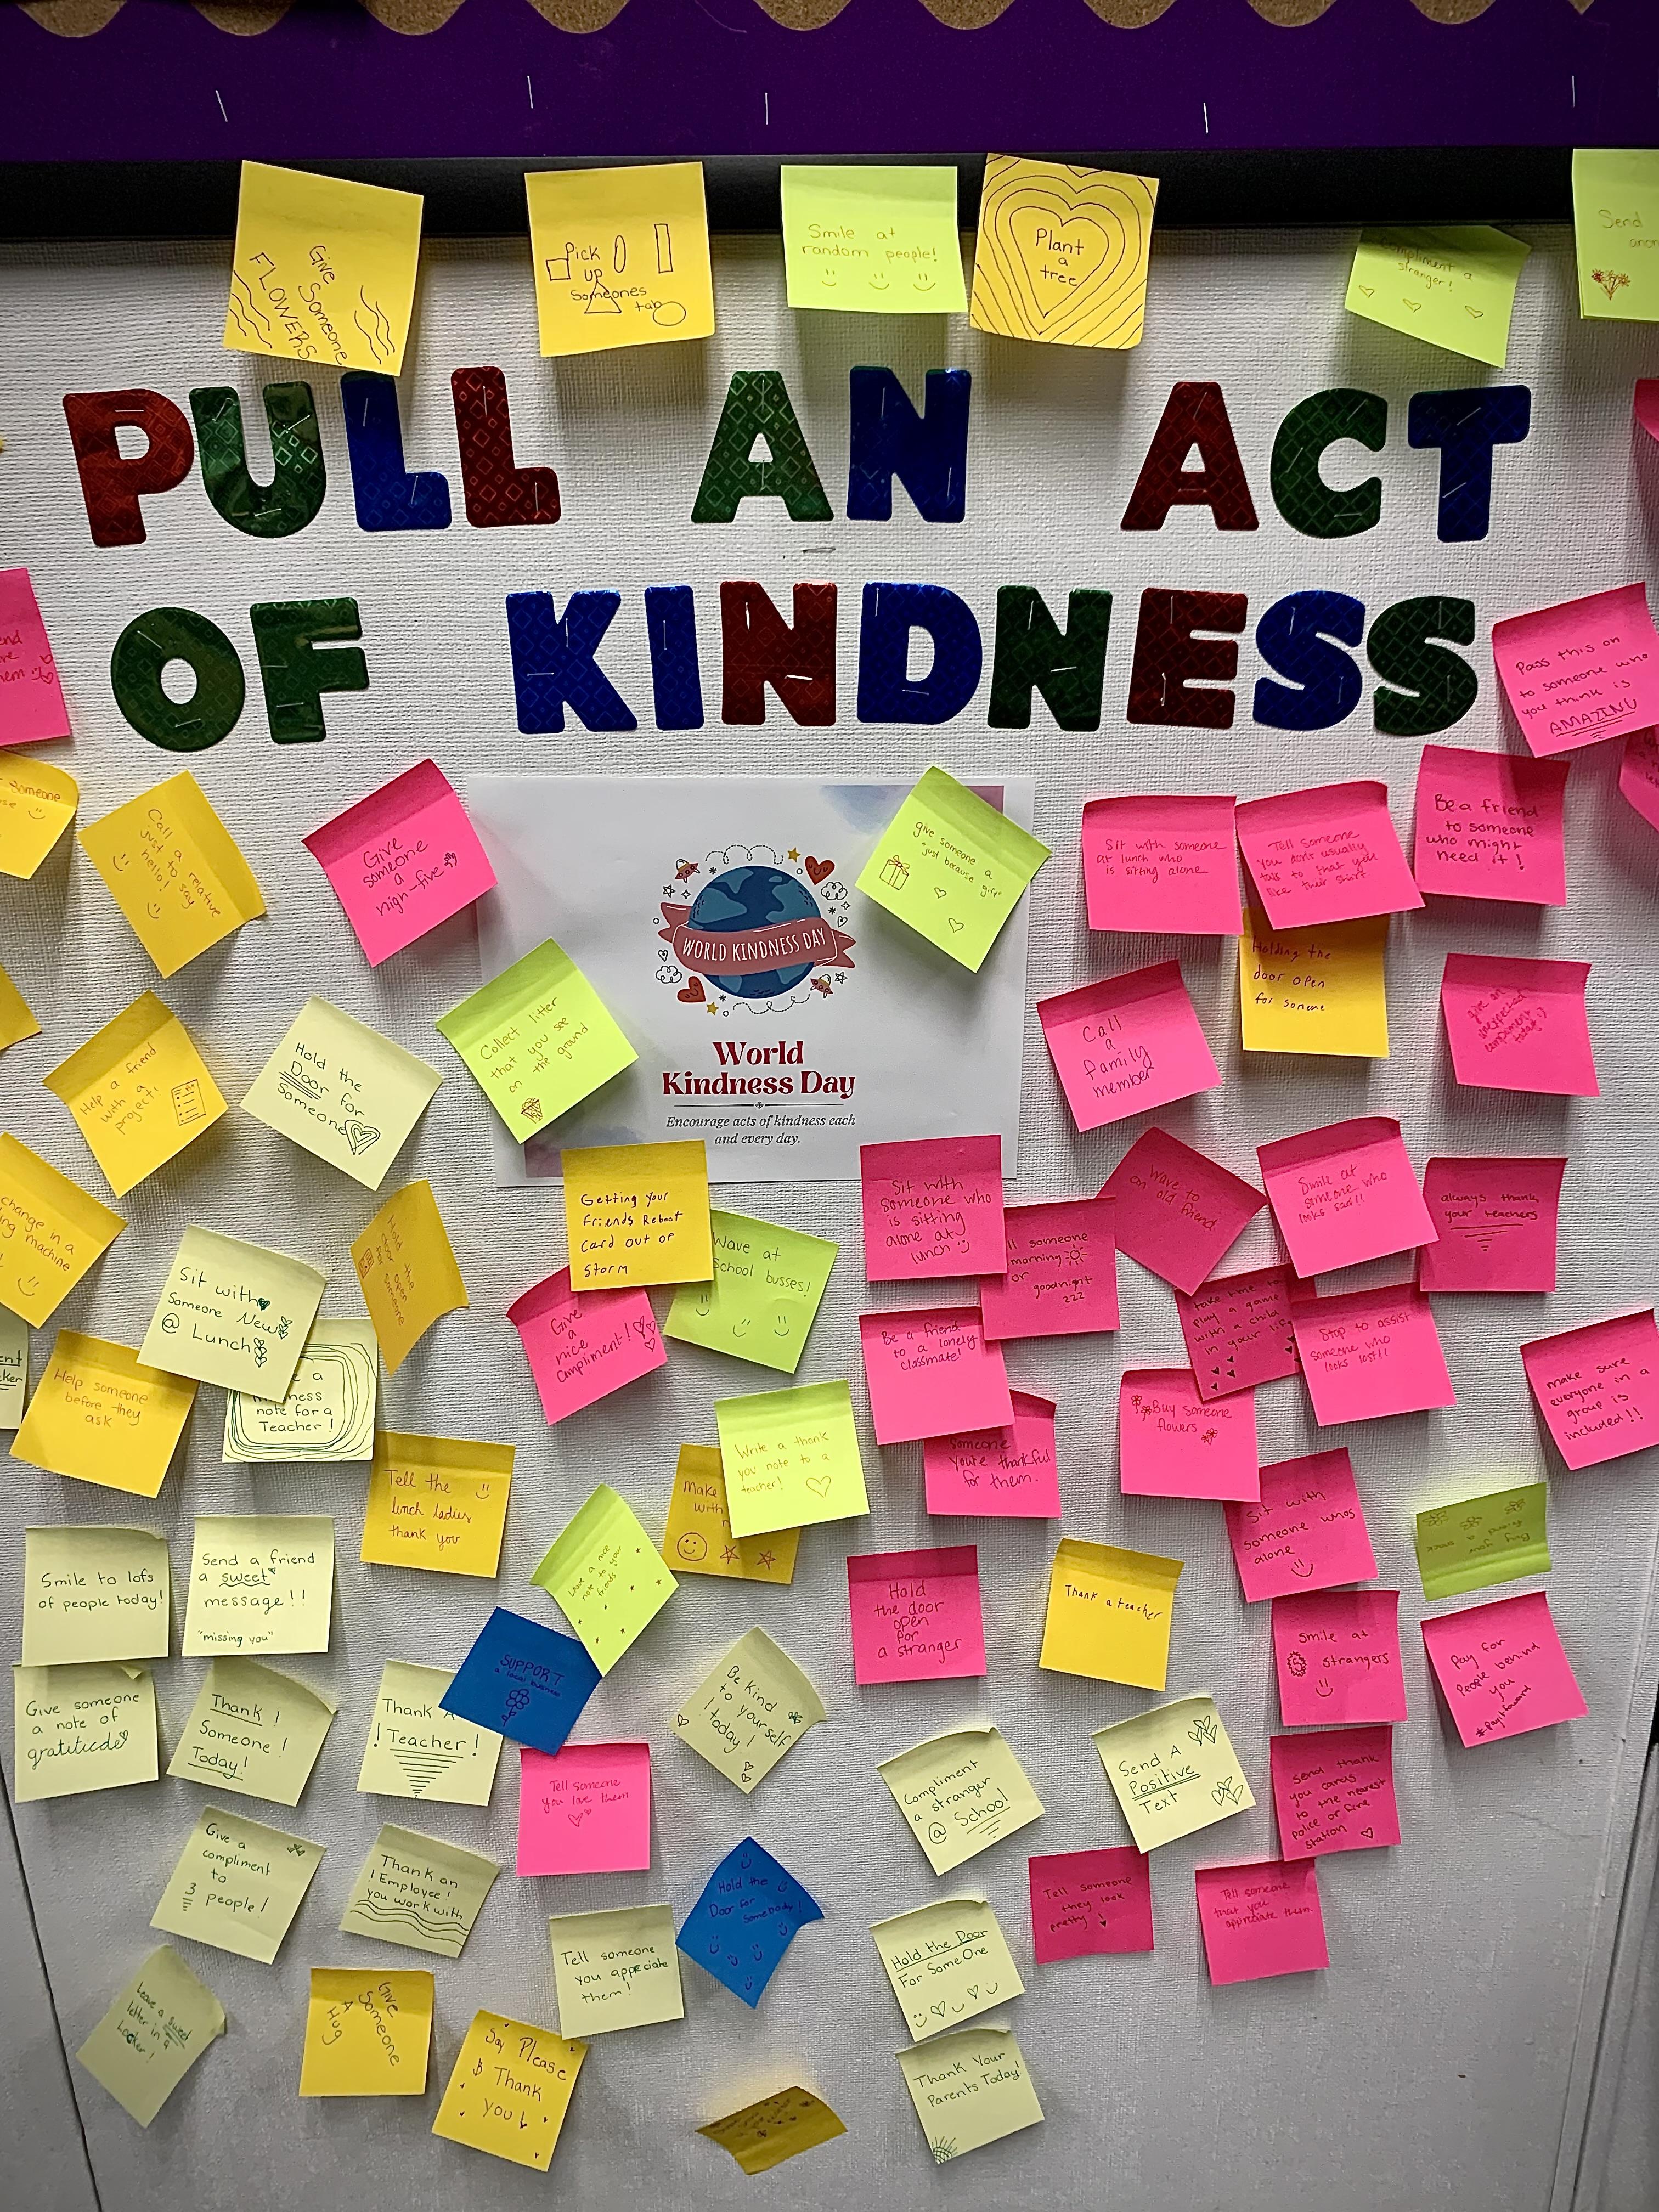 Portola JSHS acts of kindness